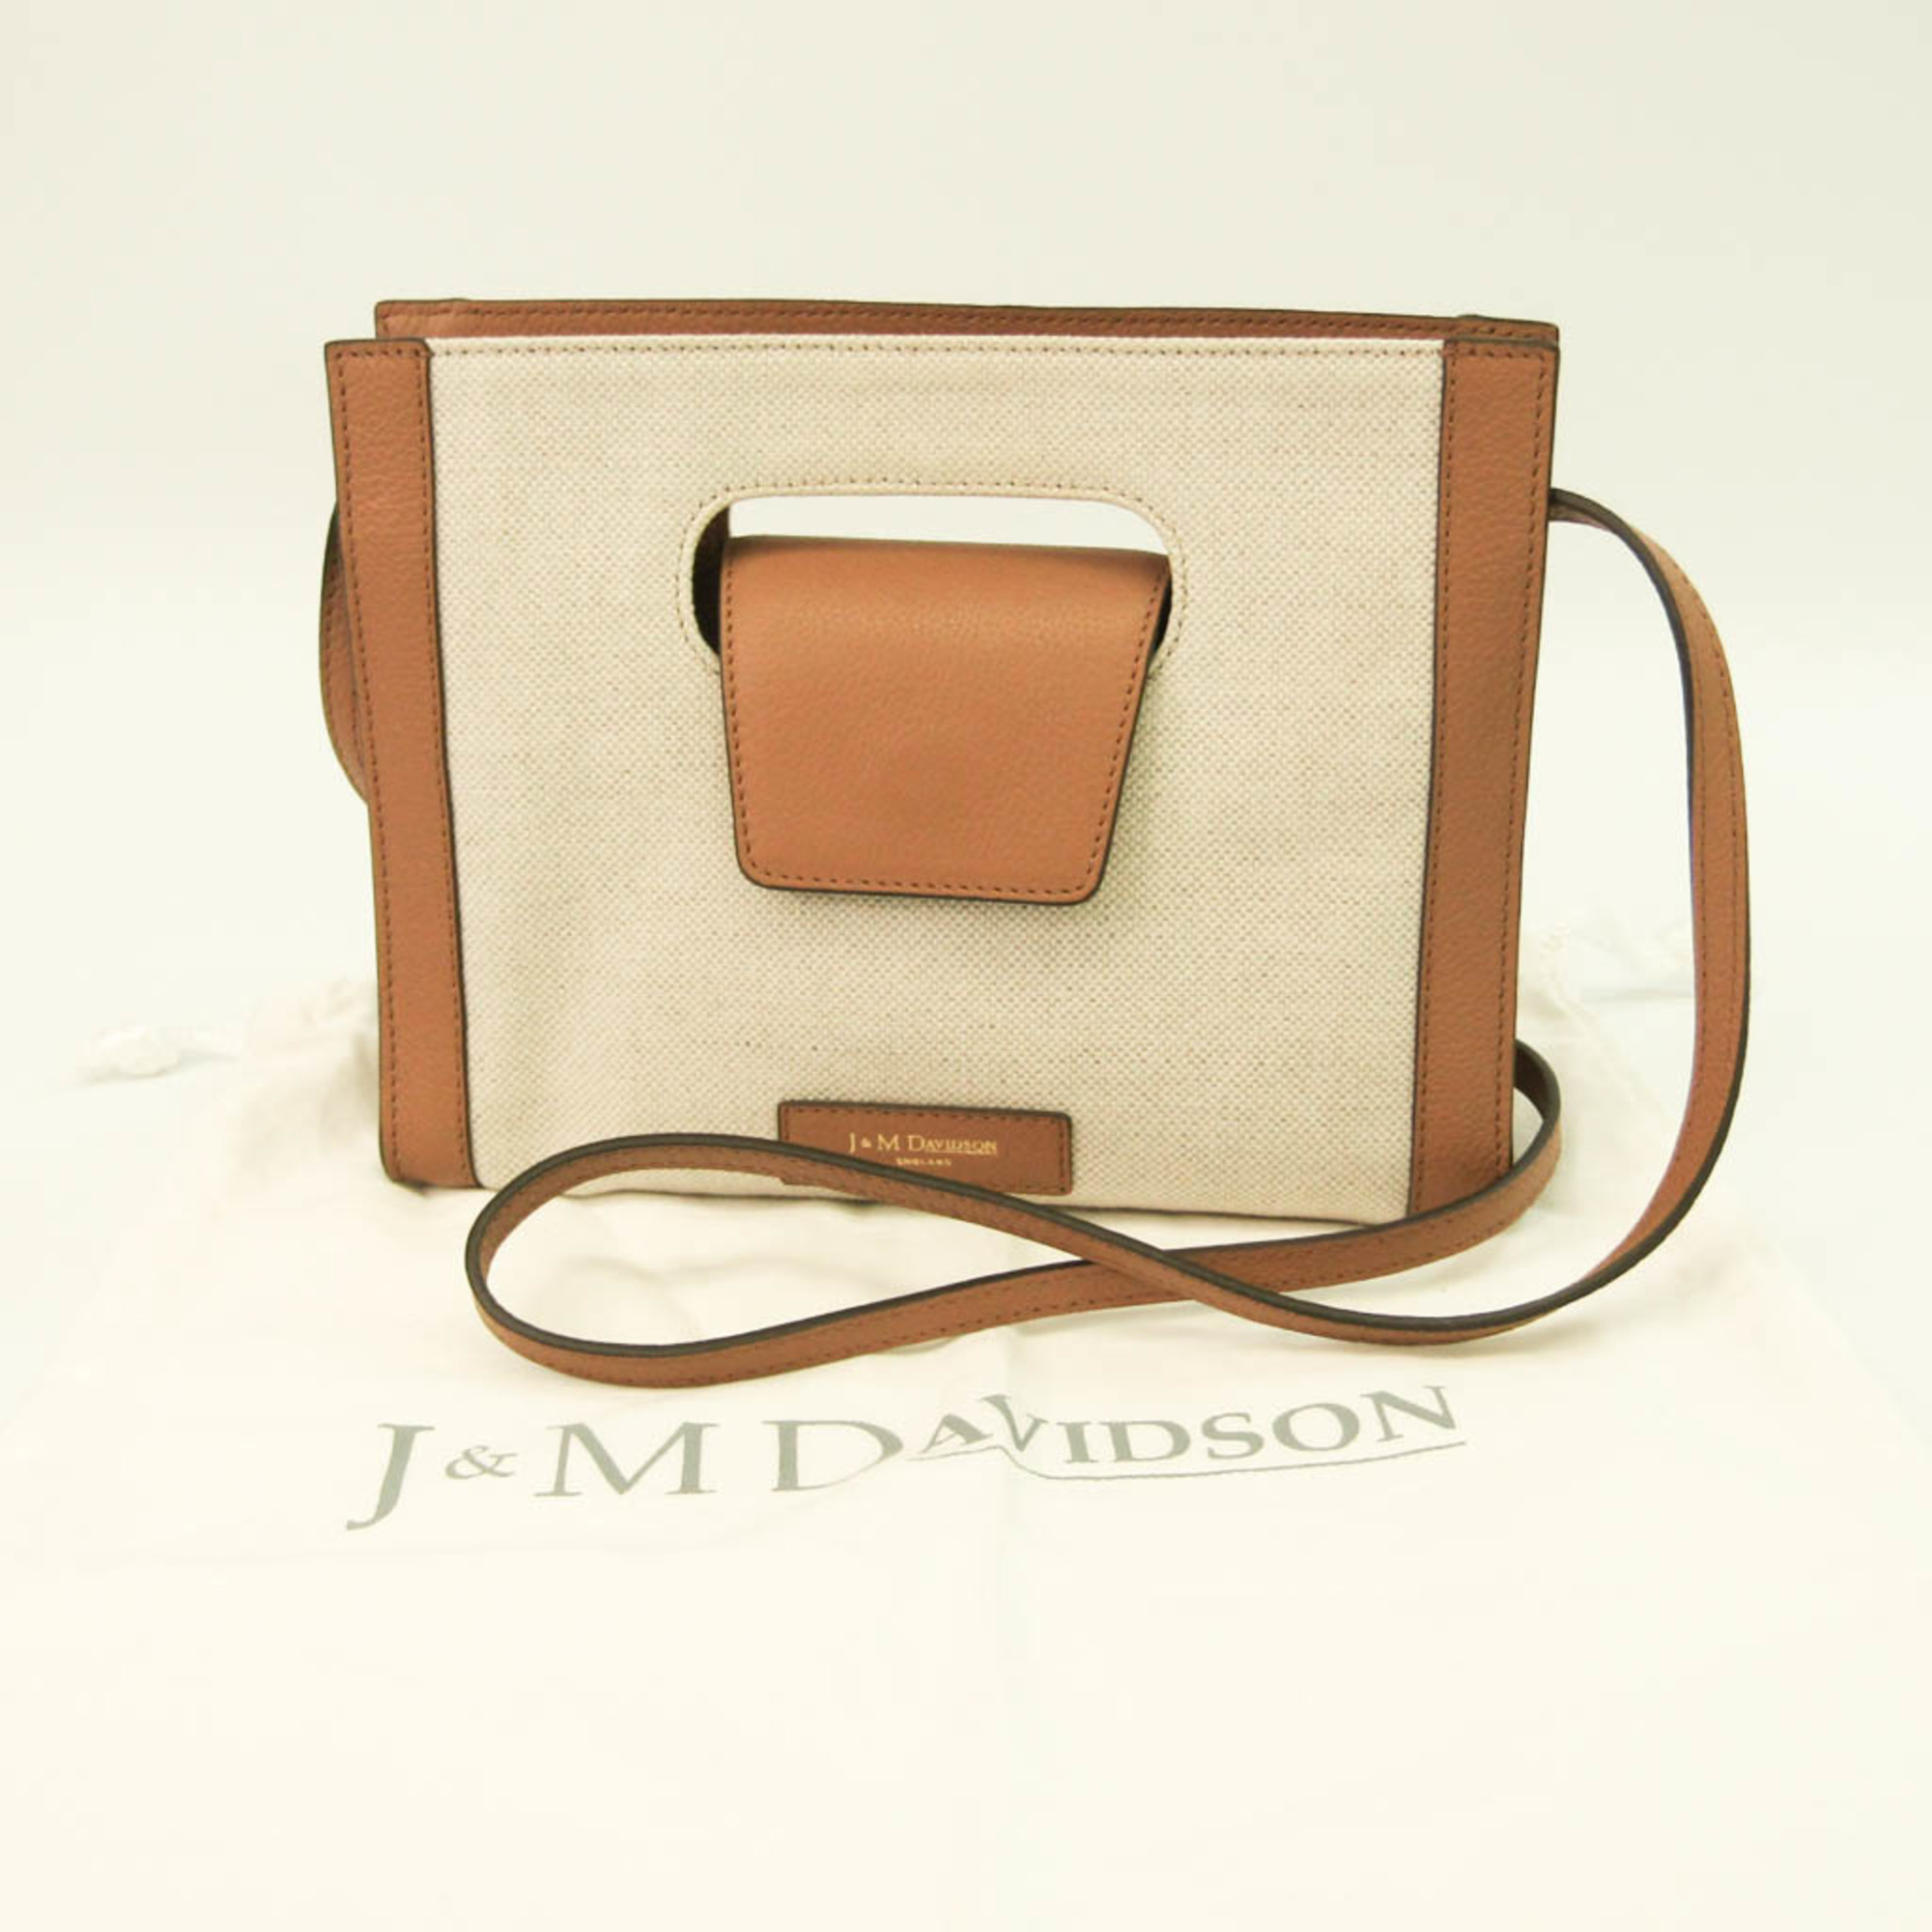 J&M Davidson COURA Women's Canvas,Leather Shoulder Bag Beige,Camel